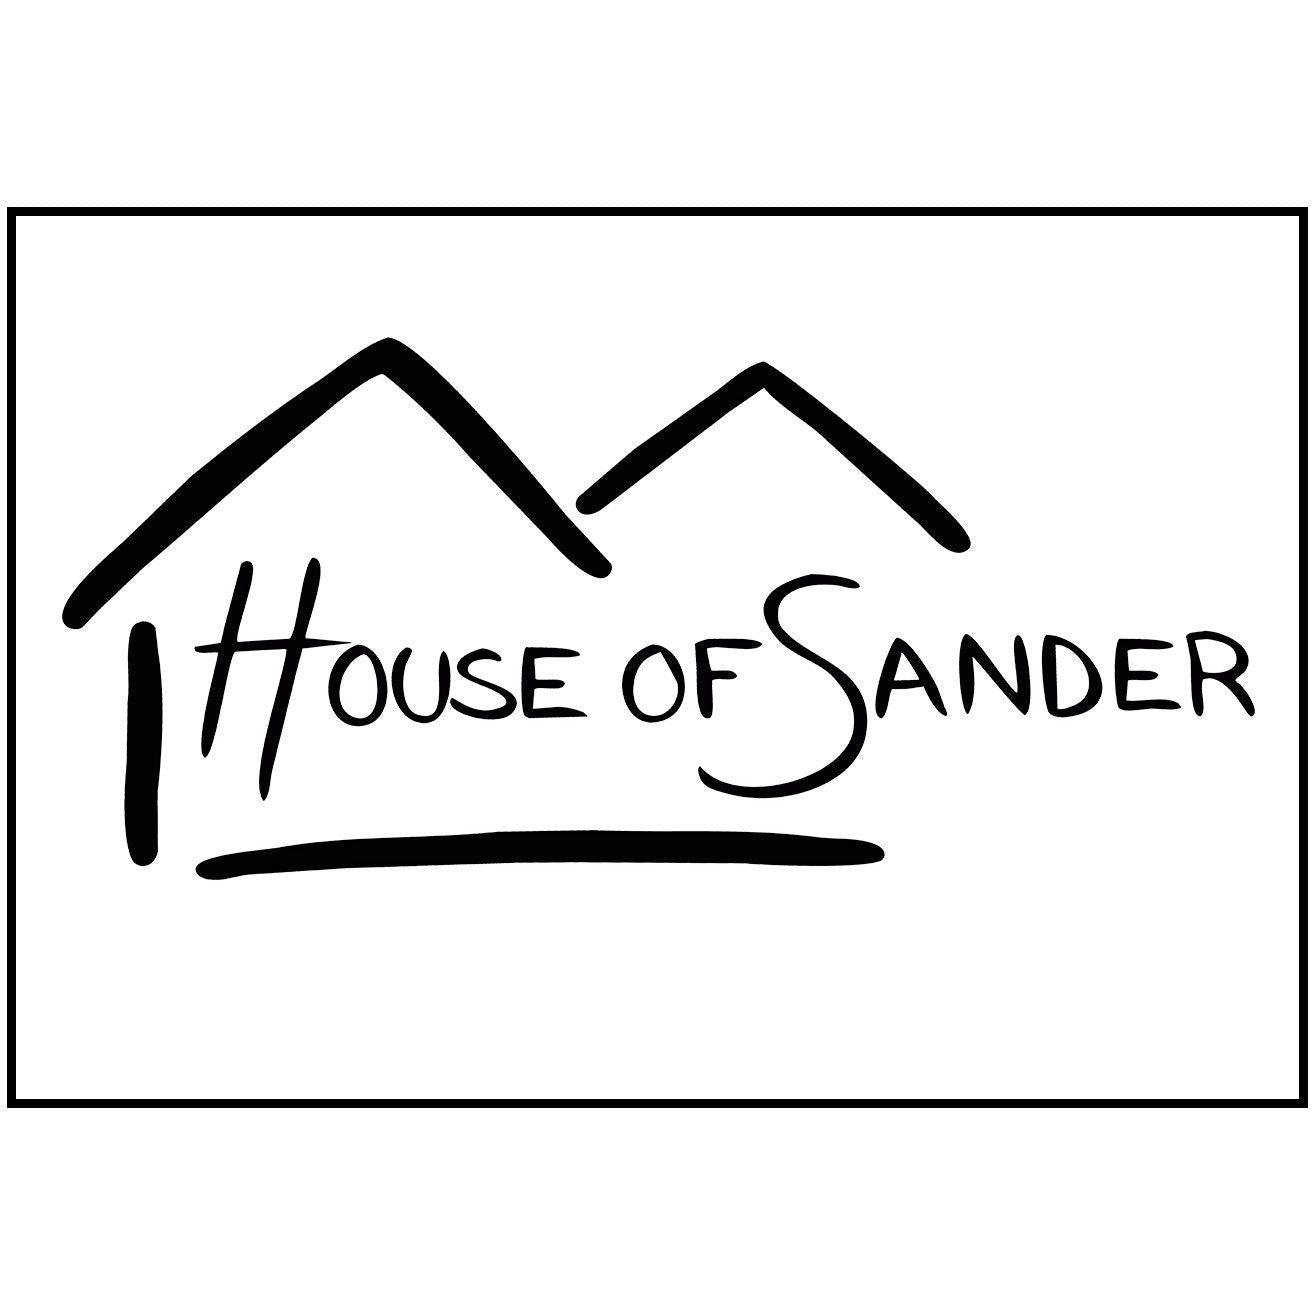 House of Sander Derby Bench, valgfri farge - FSC